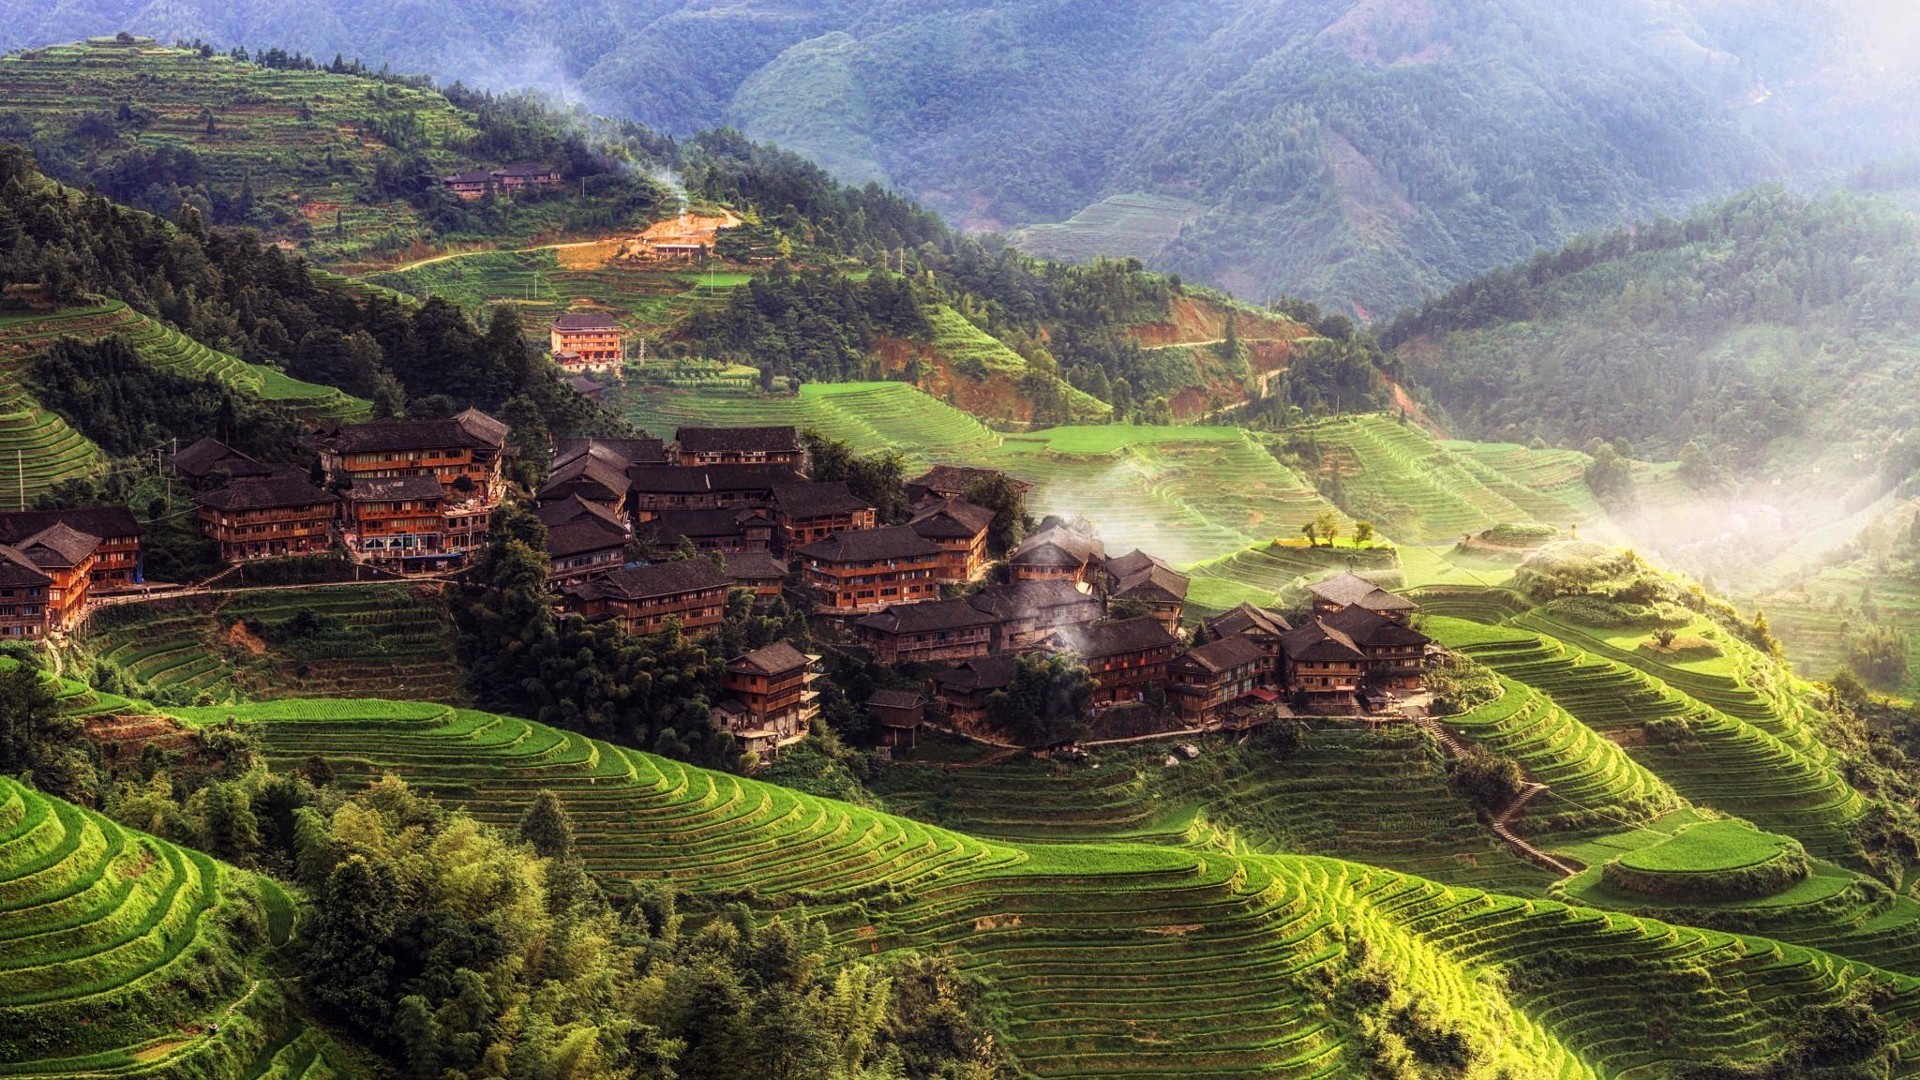 China Rice Fields - HD Wallpaper 